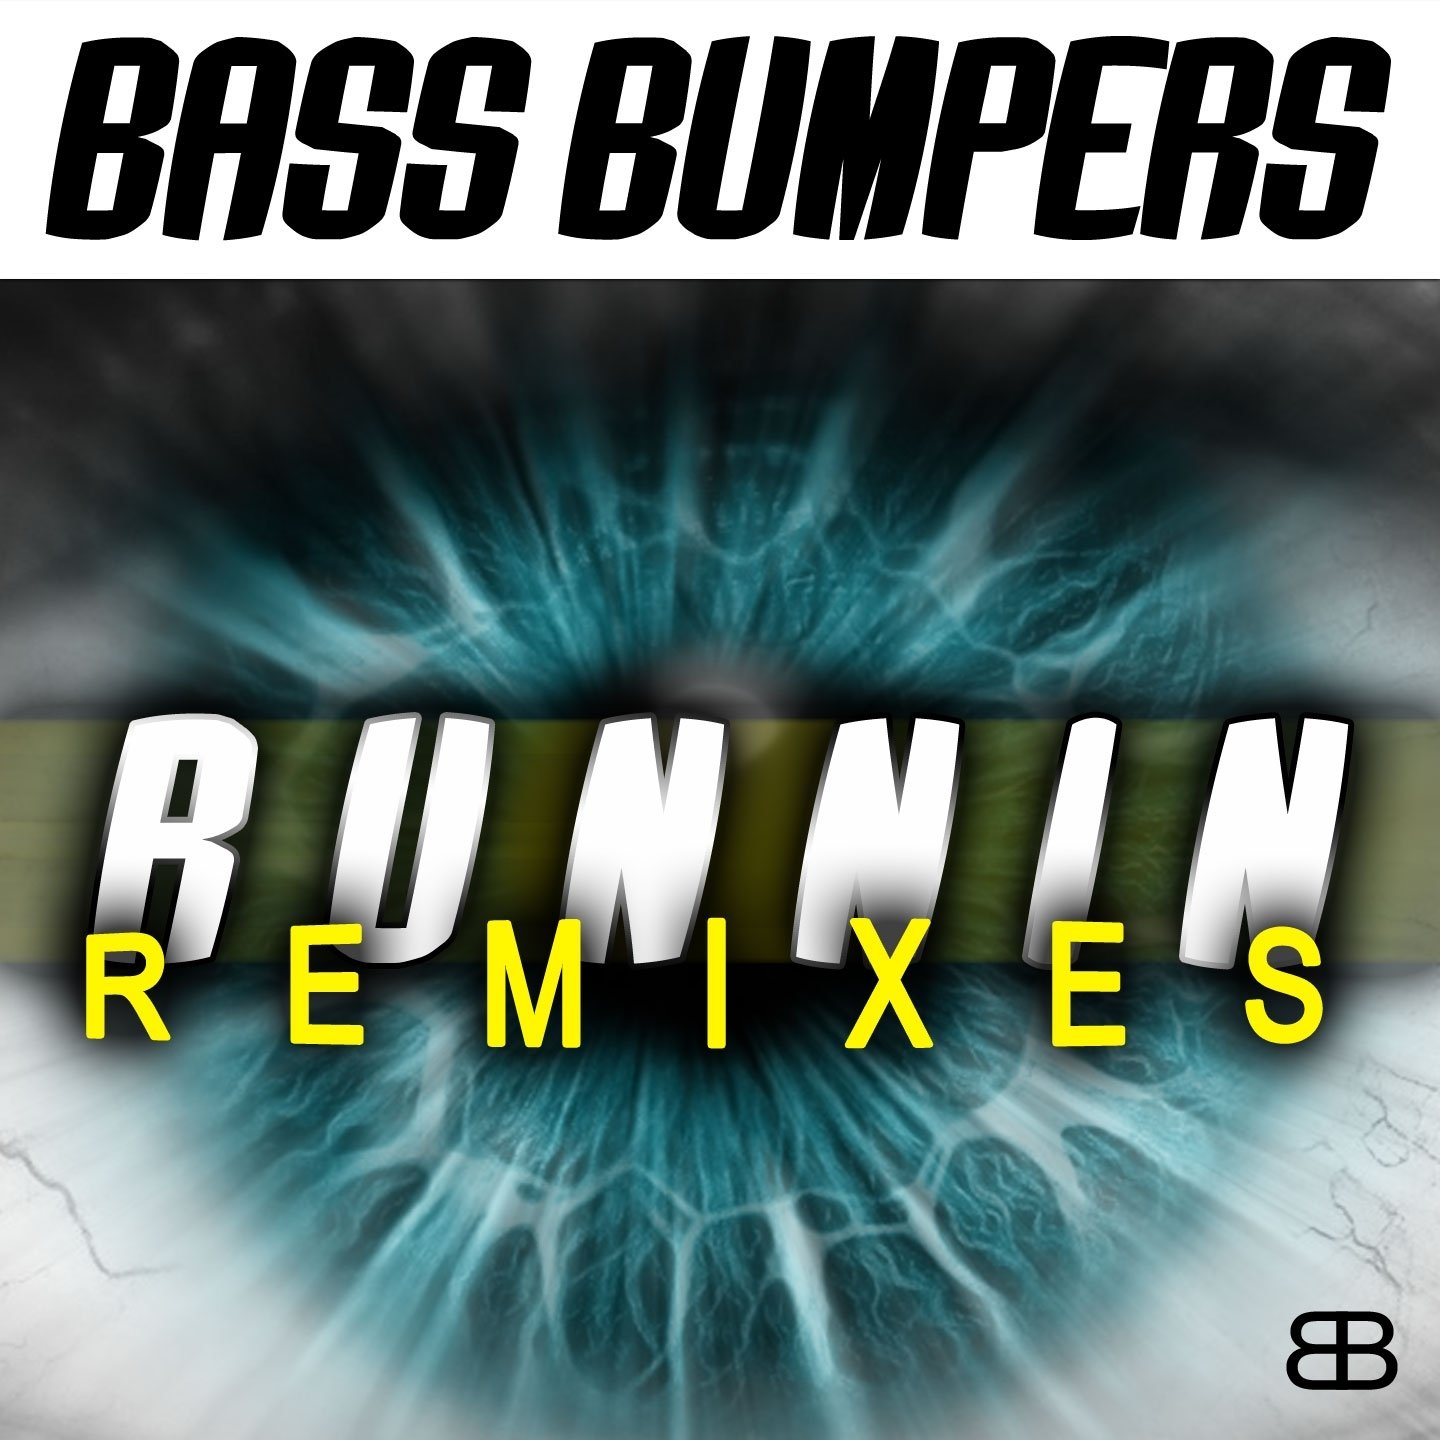 Bass bumpers. Bass Bumpers Remix.